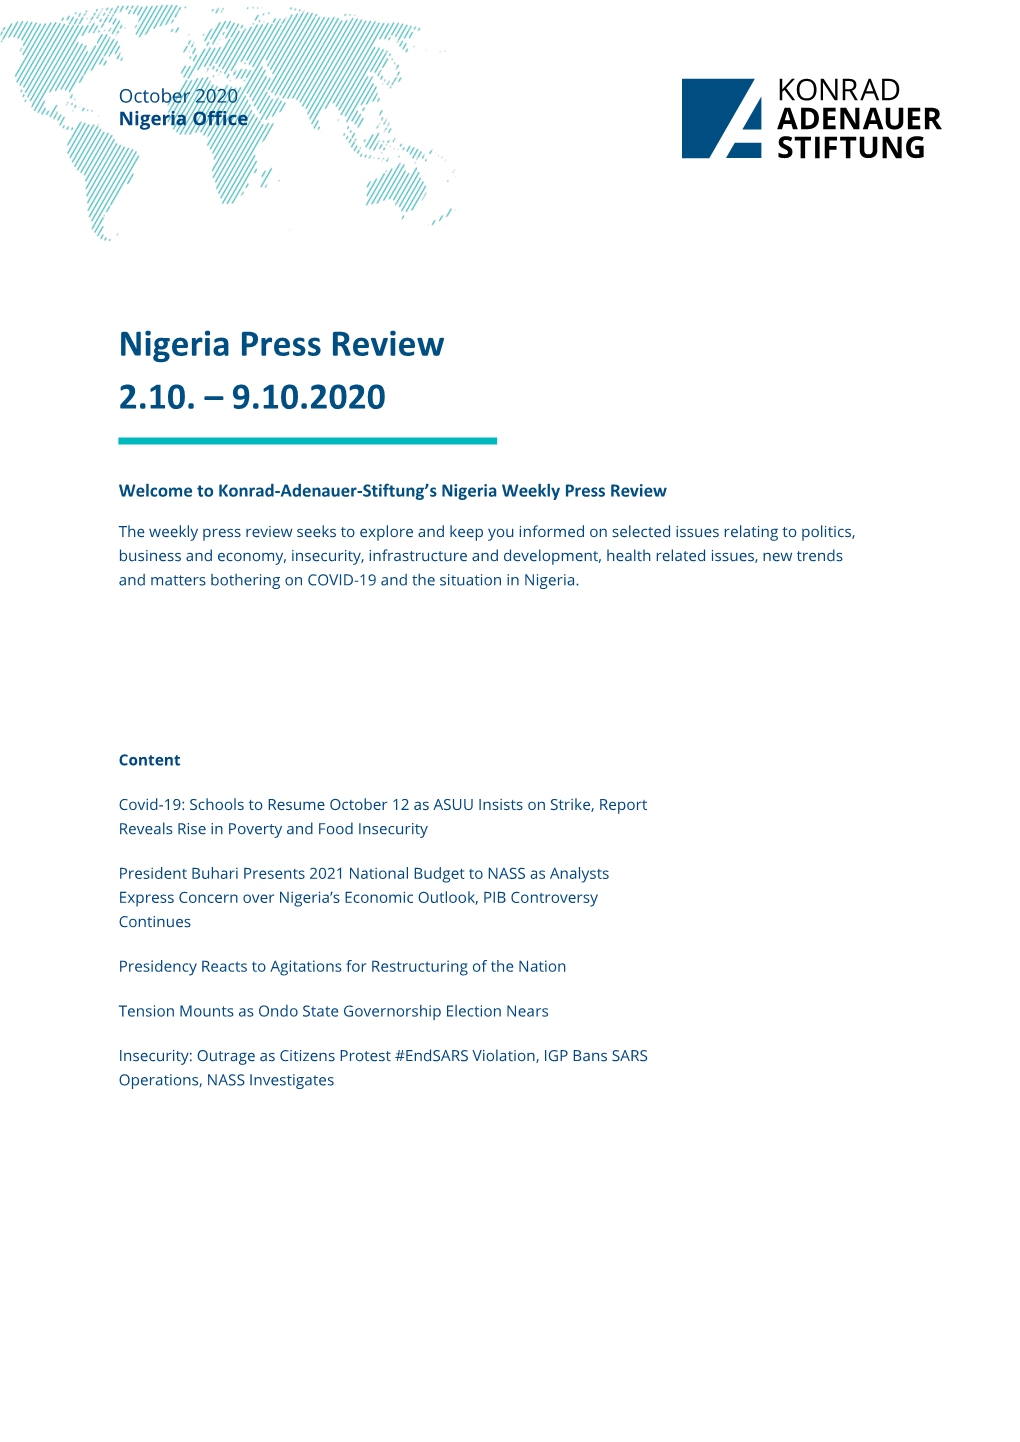 Nigeria Press Review 2.10. – 9.10.2020